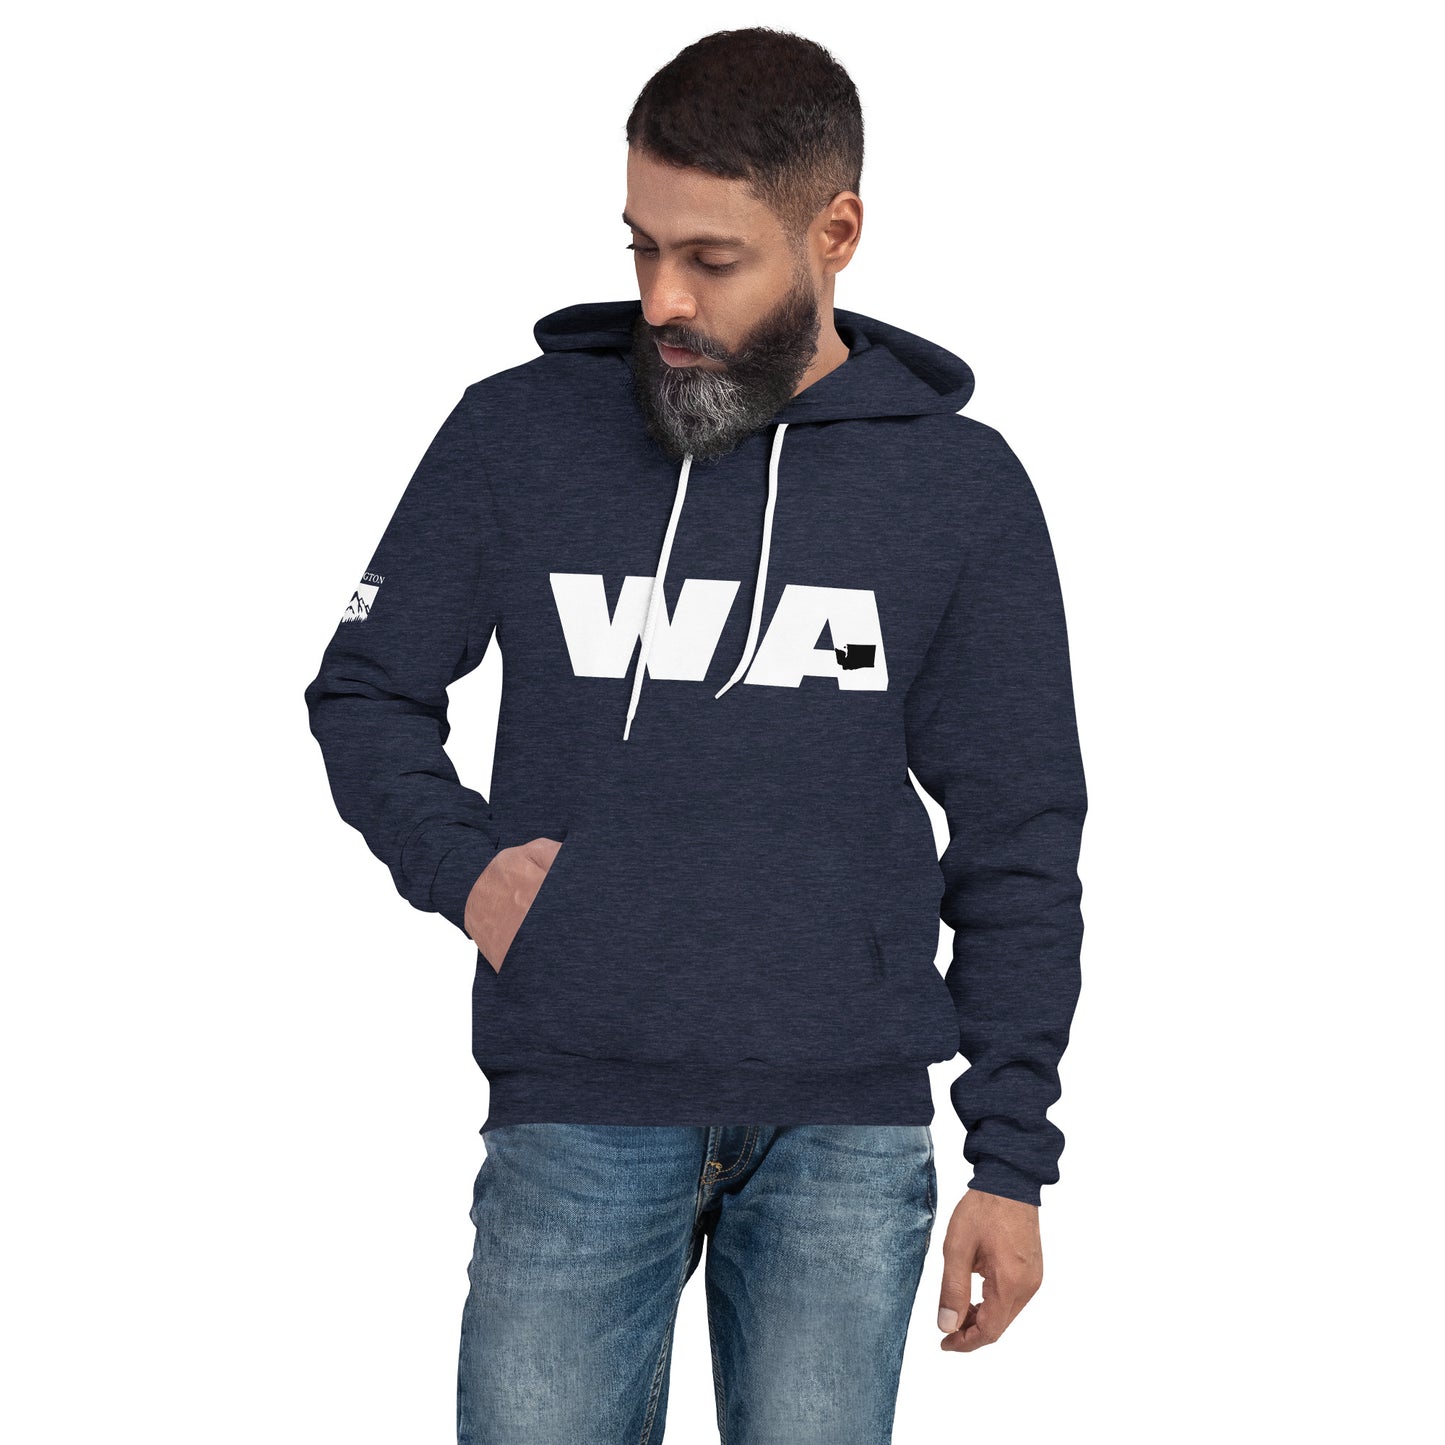 Unisex hoodie - WA (Washington)